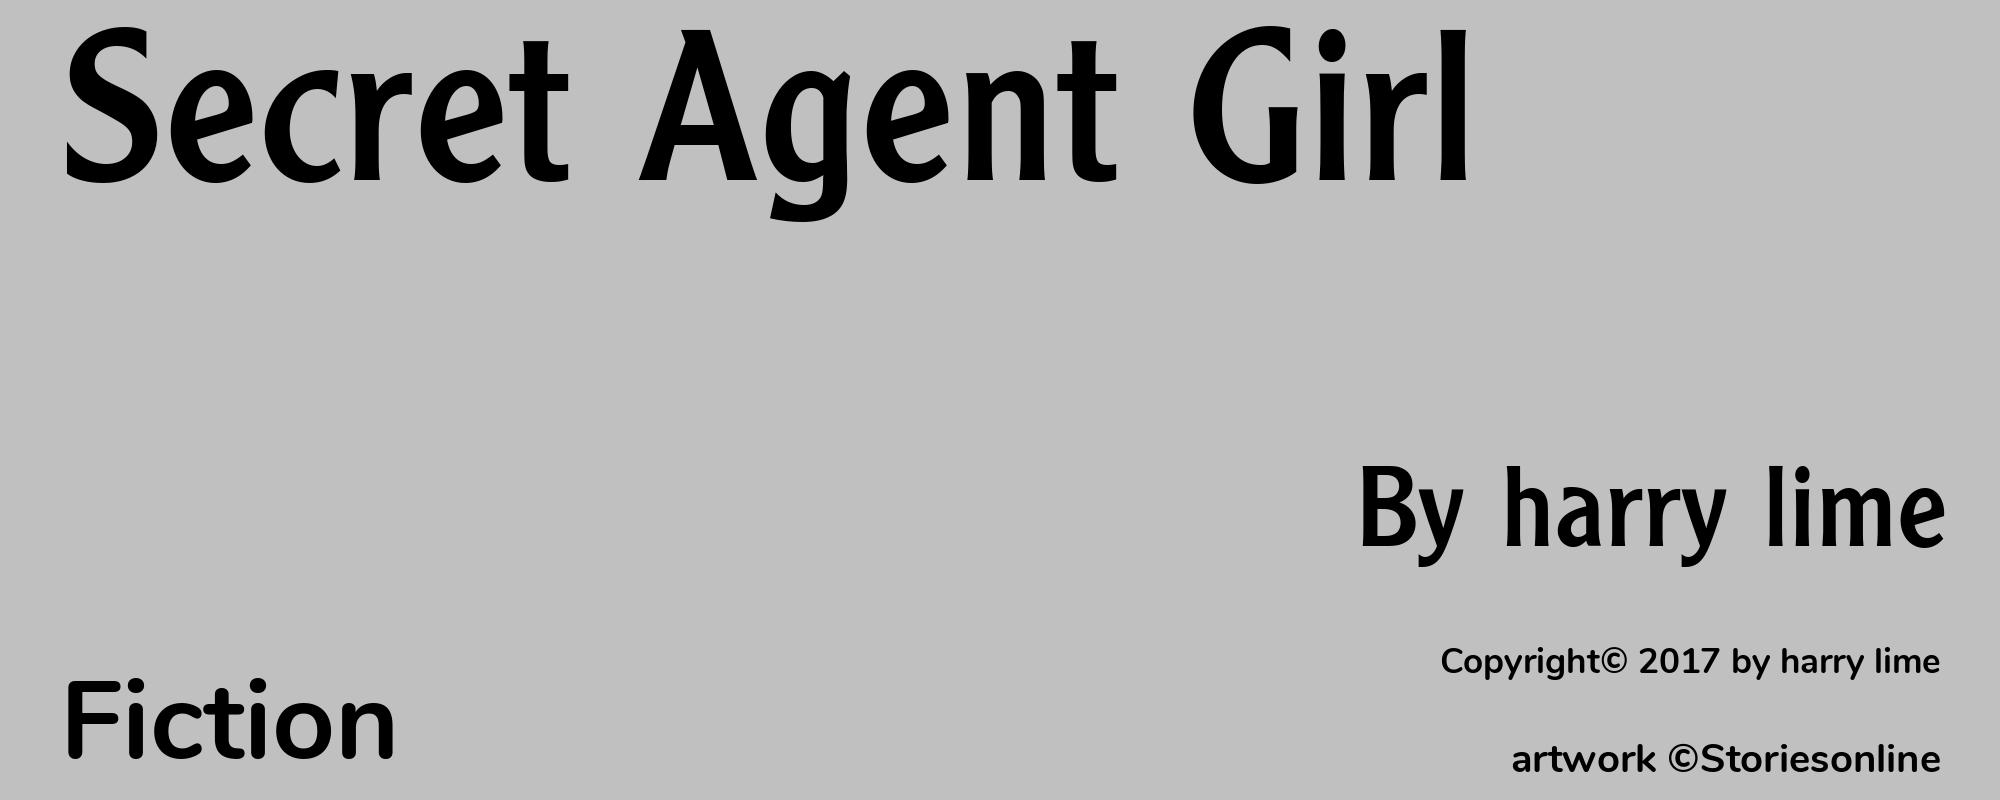 Secret Agent Girl - Cover